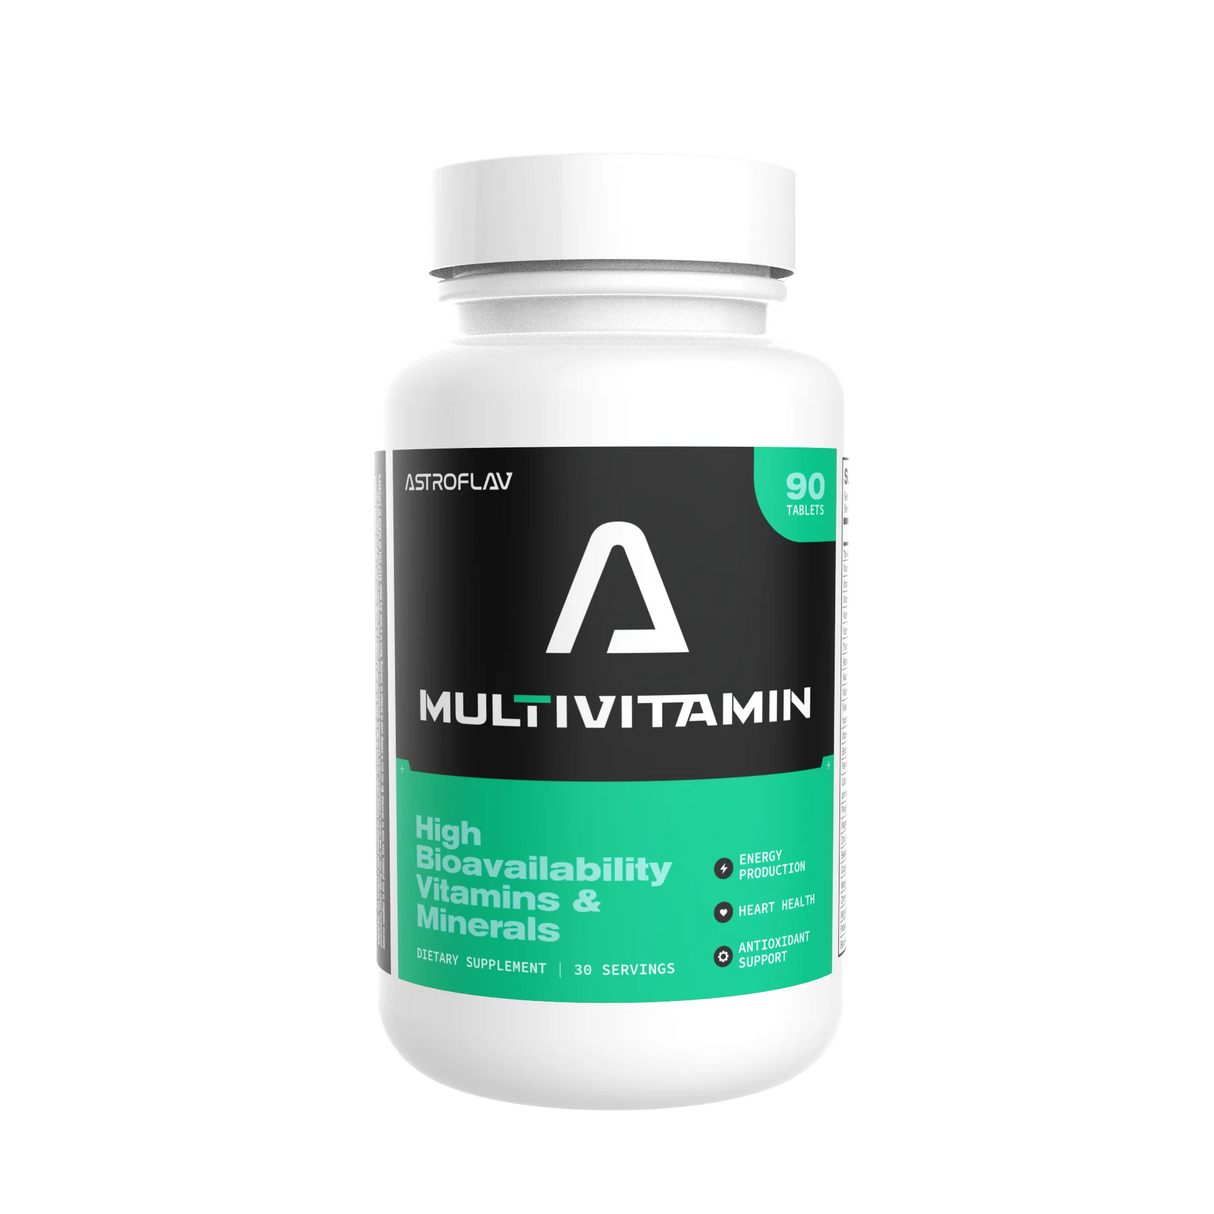 Multivitamin - Astroflav